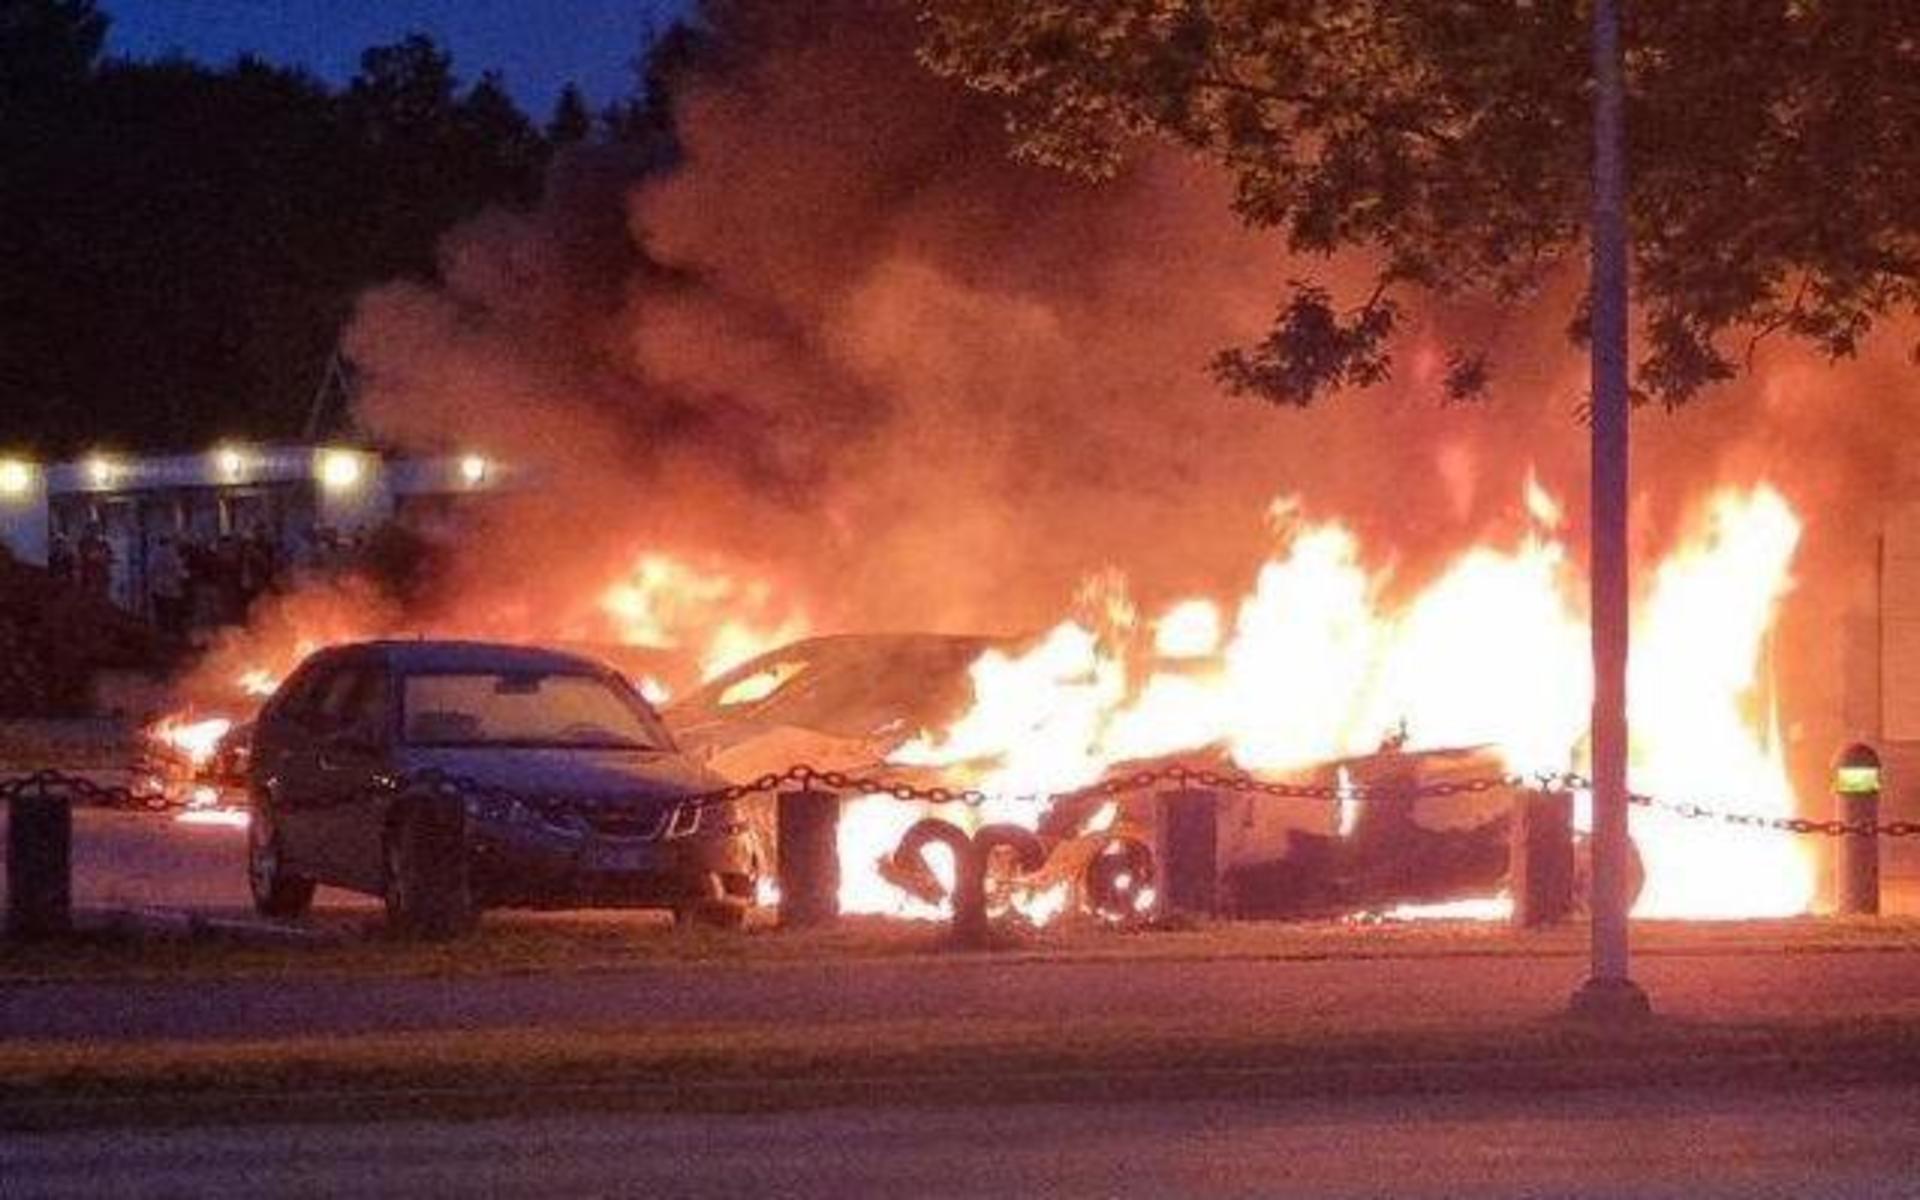 Trollhätteborna vaknade upp till utbrända bilar, parkeringshus   och radhus som stod i brand.